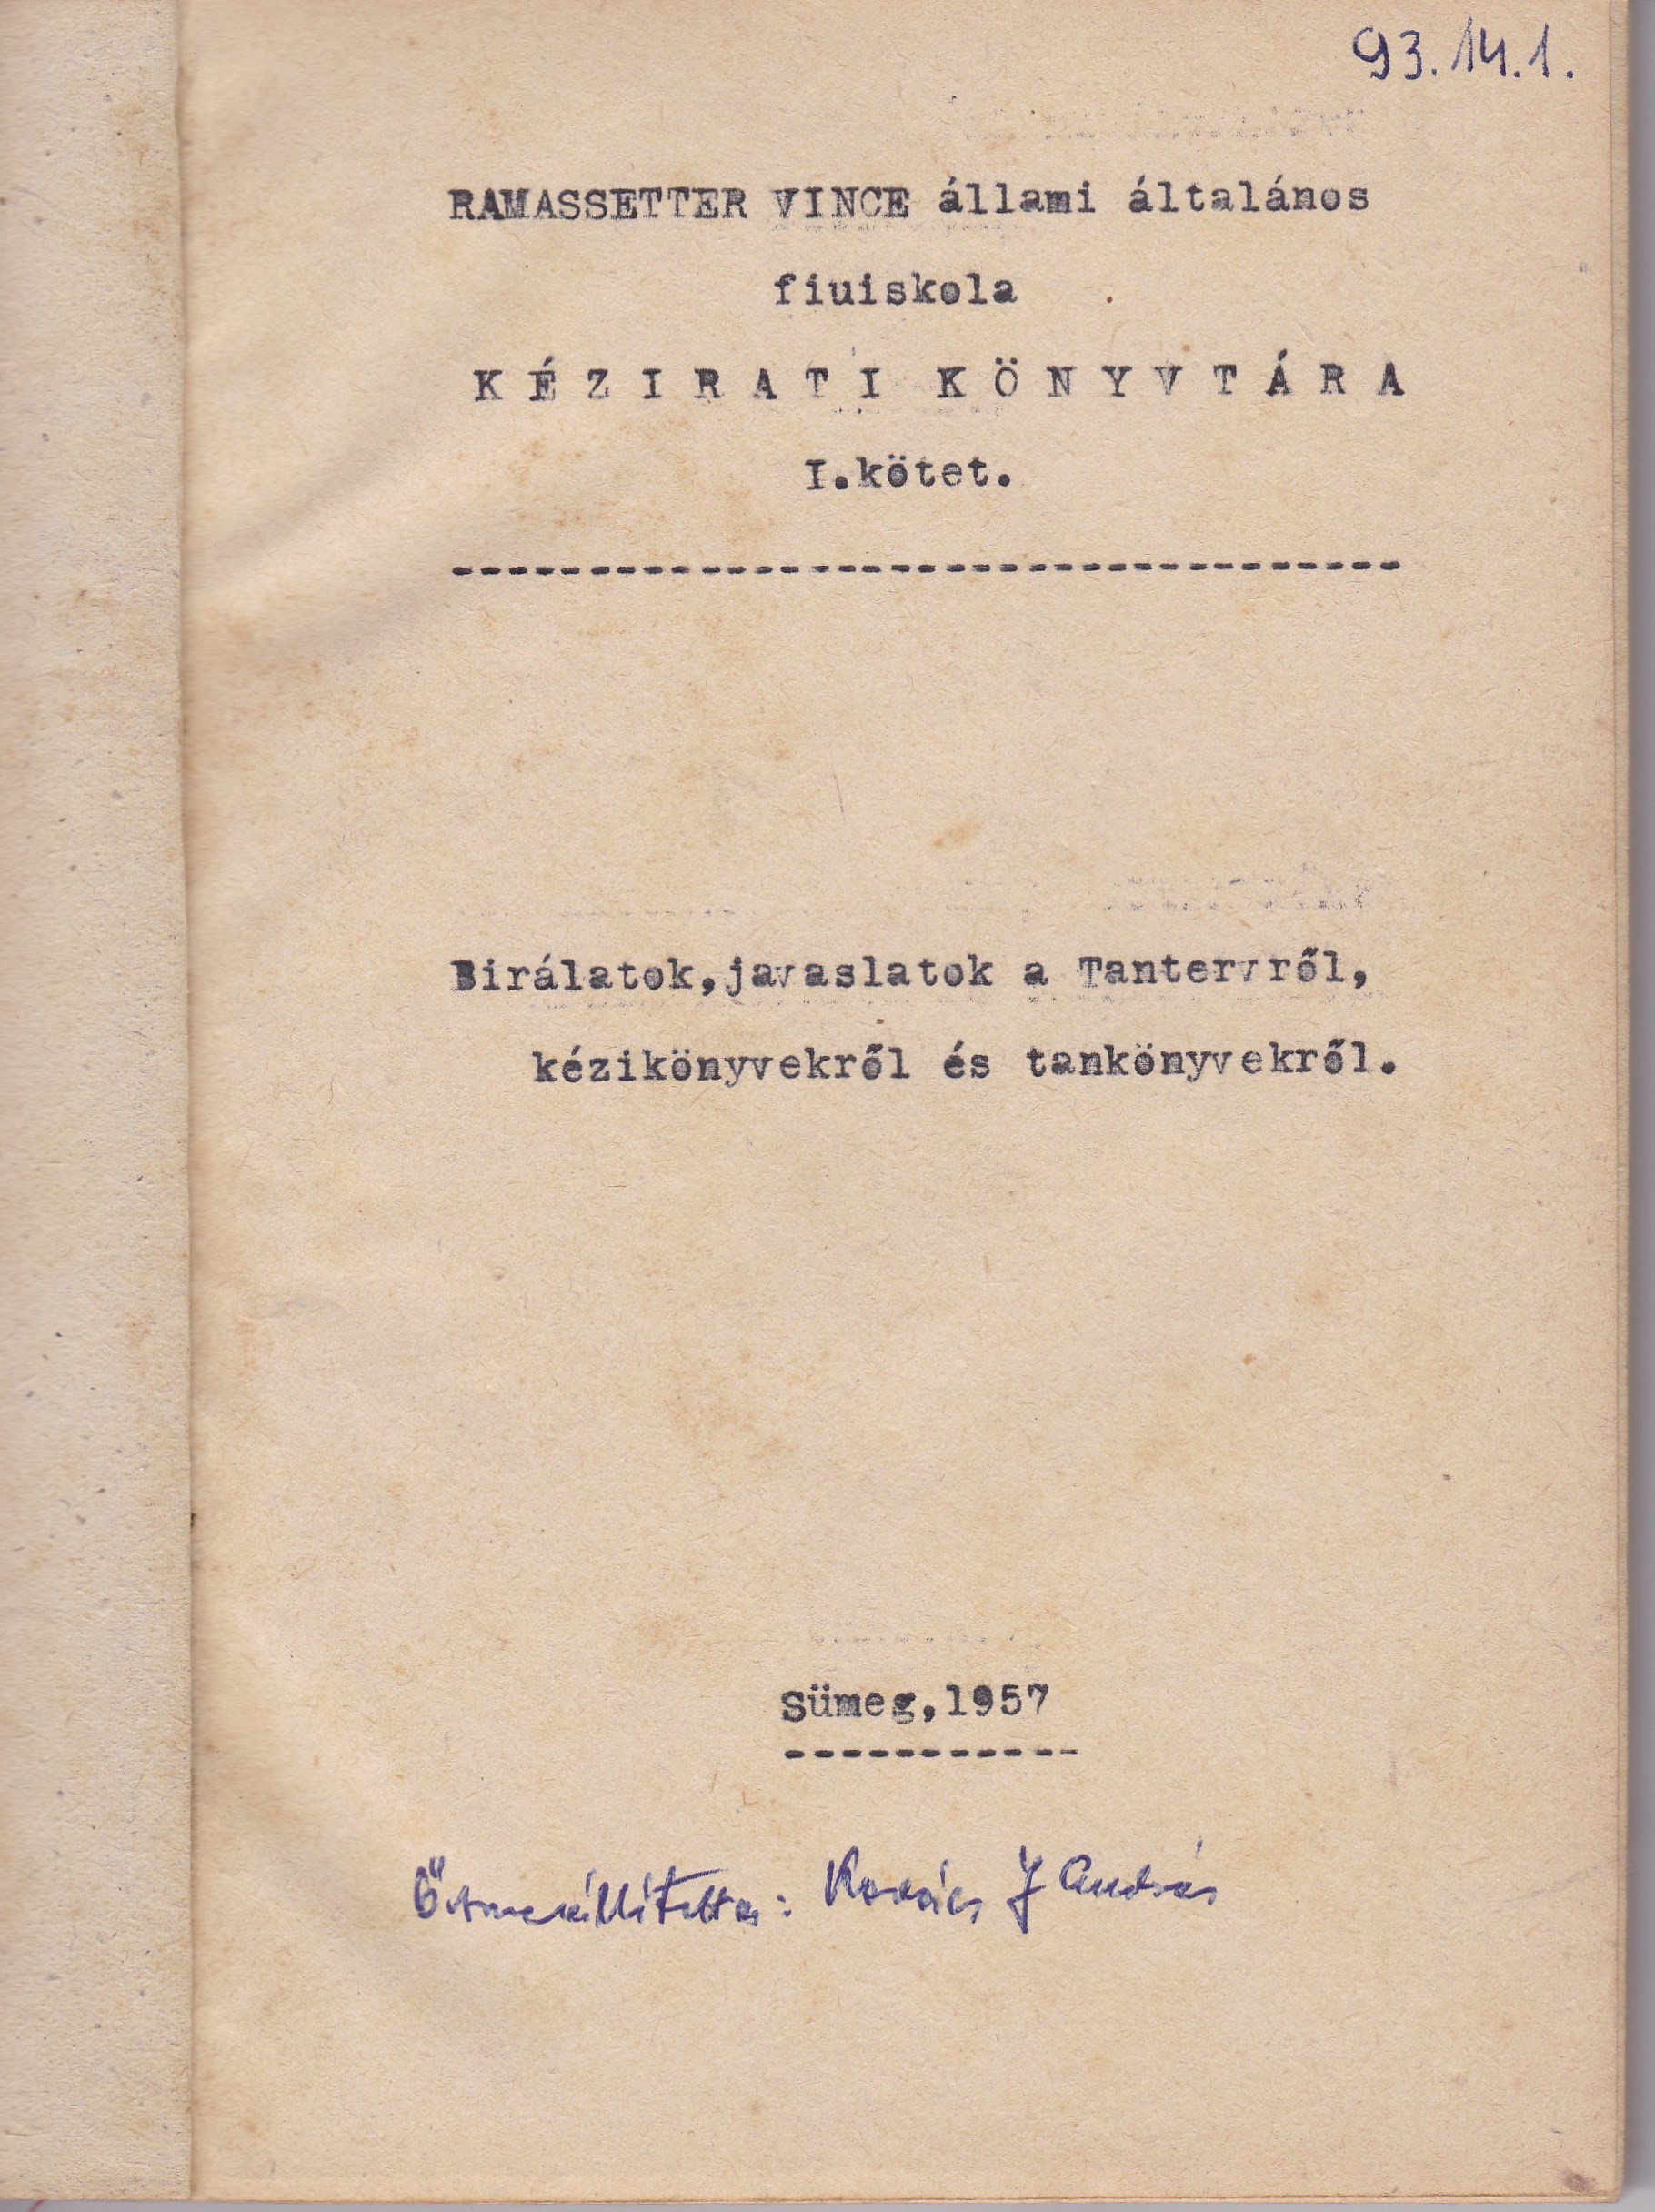 Bírálatok, javaslatok a Tantervről, kézikönyvekről és tankönyvekről (Tapolcai Városi Múzeum CC BY-NC-SA)